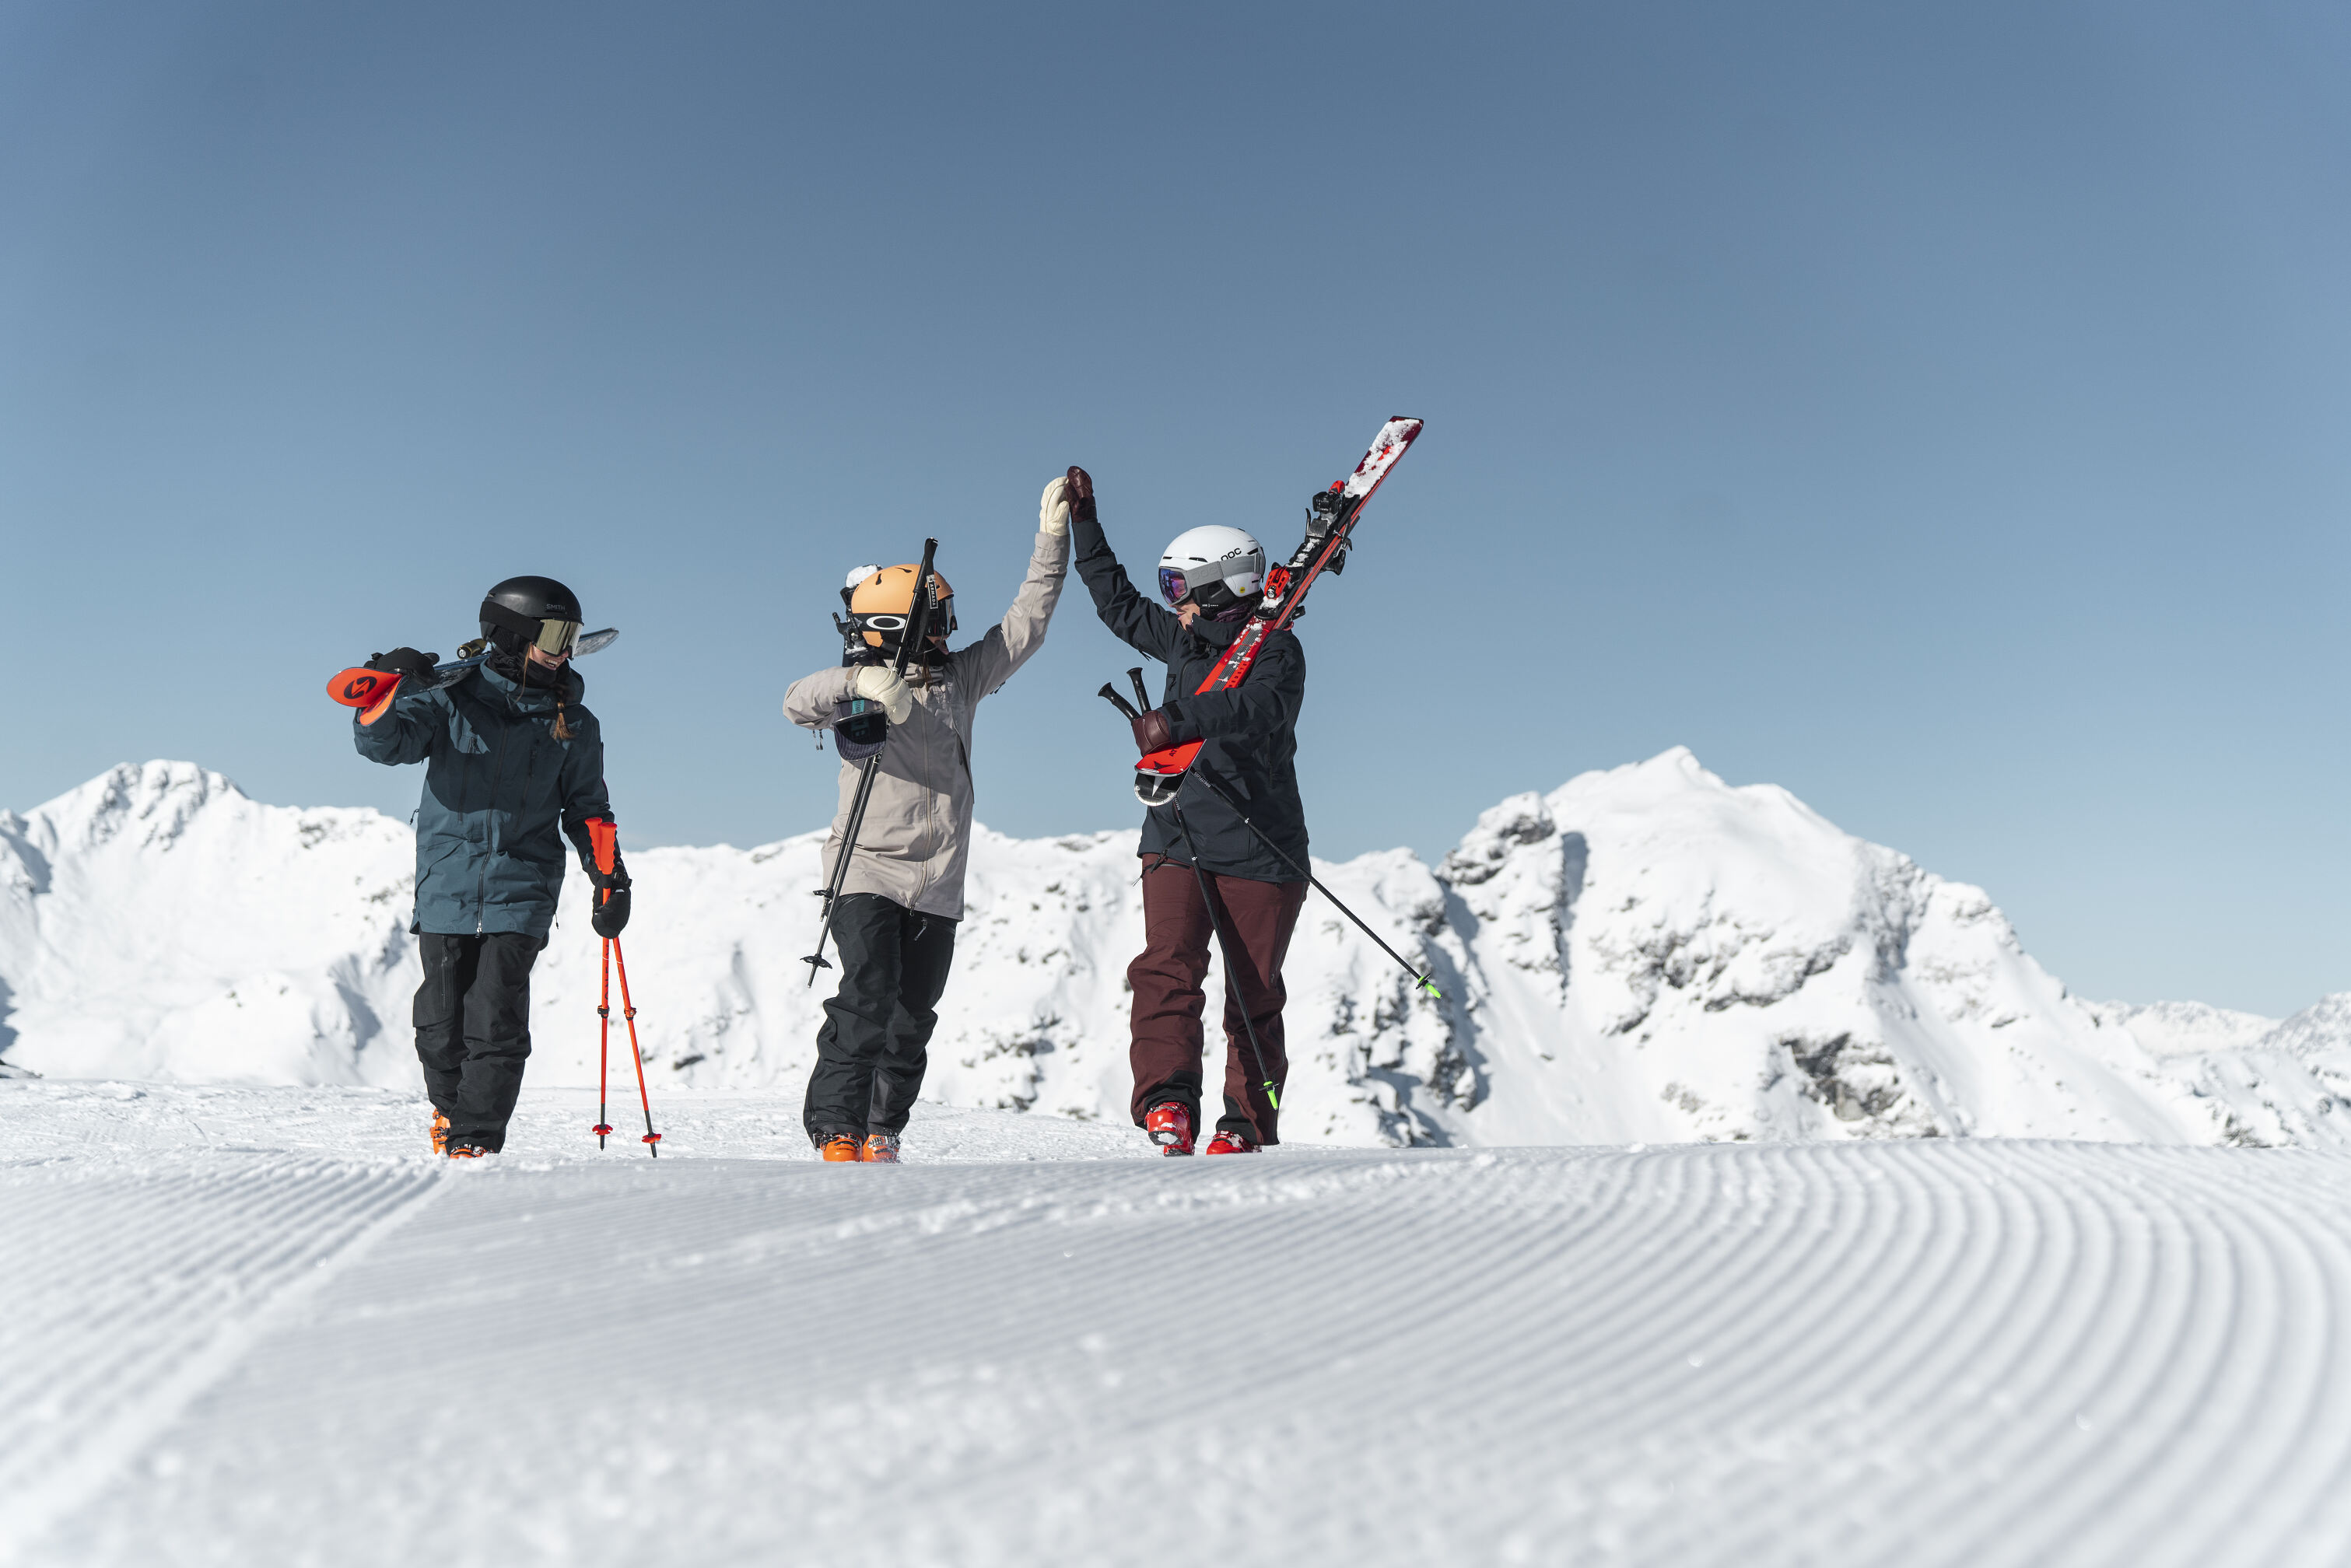 Drei Skifahrer mit geschulterten Ski vor verschneiten Berggipfeln klatschen ein